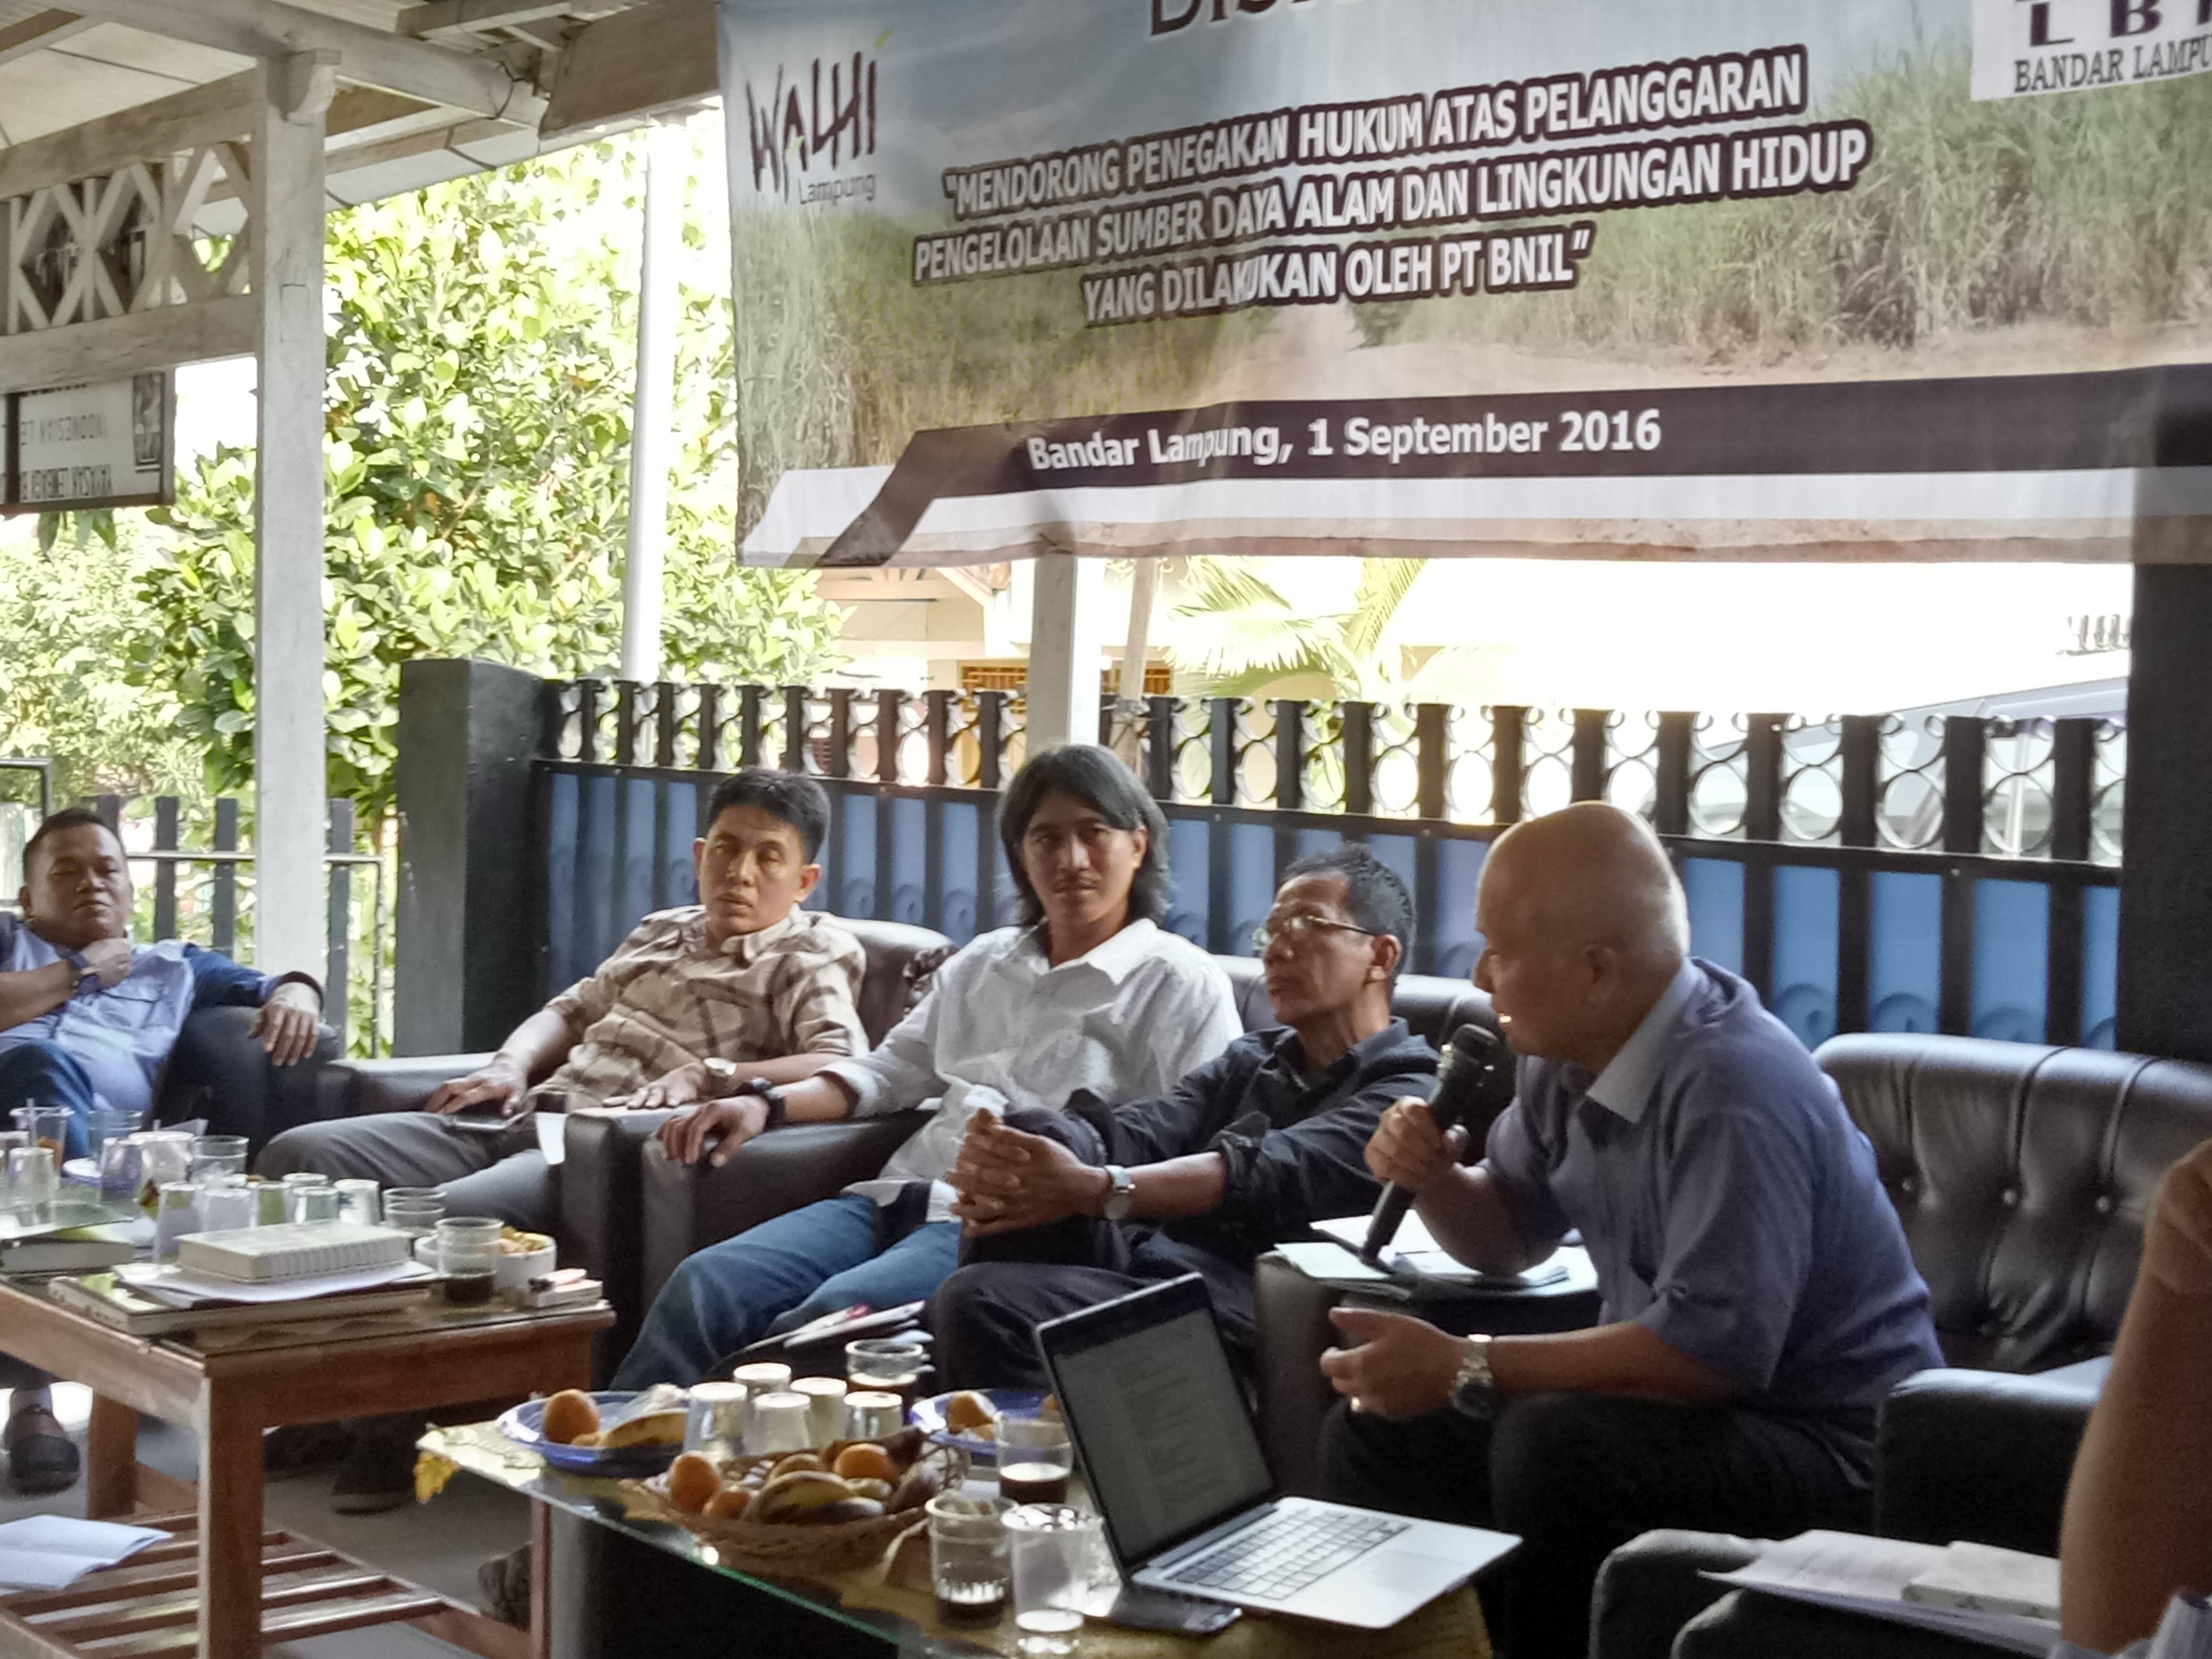 diskusi di lbh bandarlampung terkait pelanggaran lingkungan pt bnil, kamis (1/9/2016)